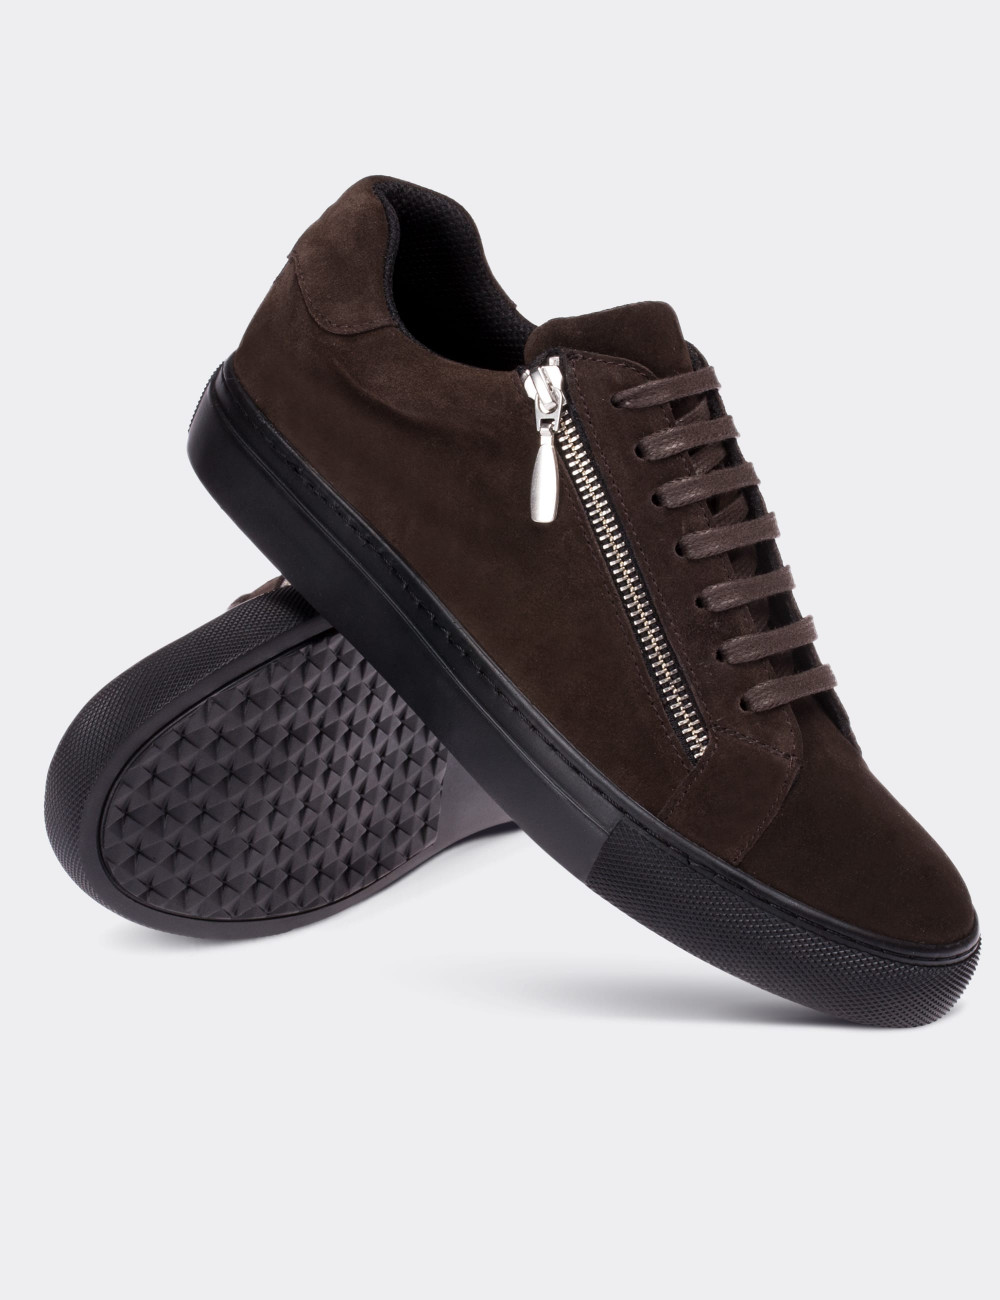 Brown Suede Calfskin Sneakers - Deery